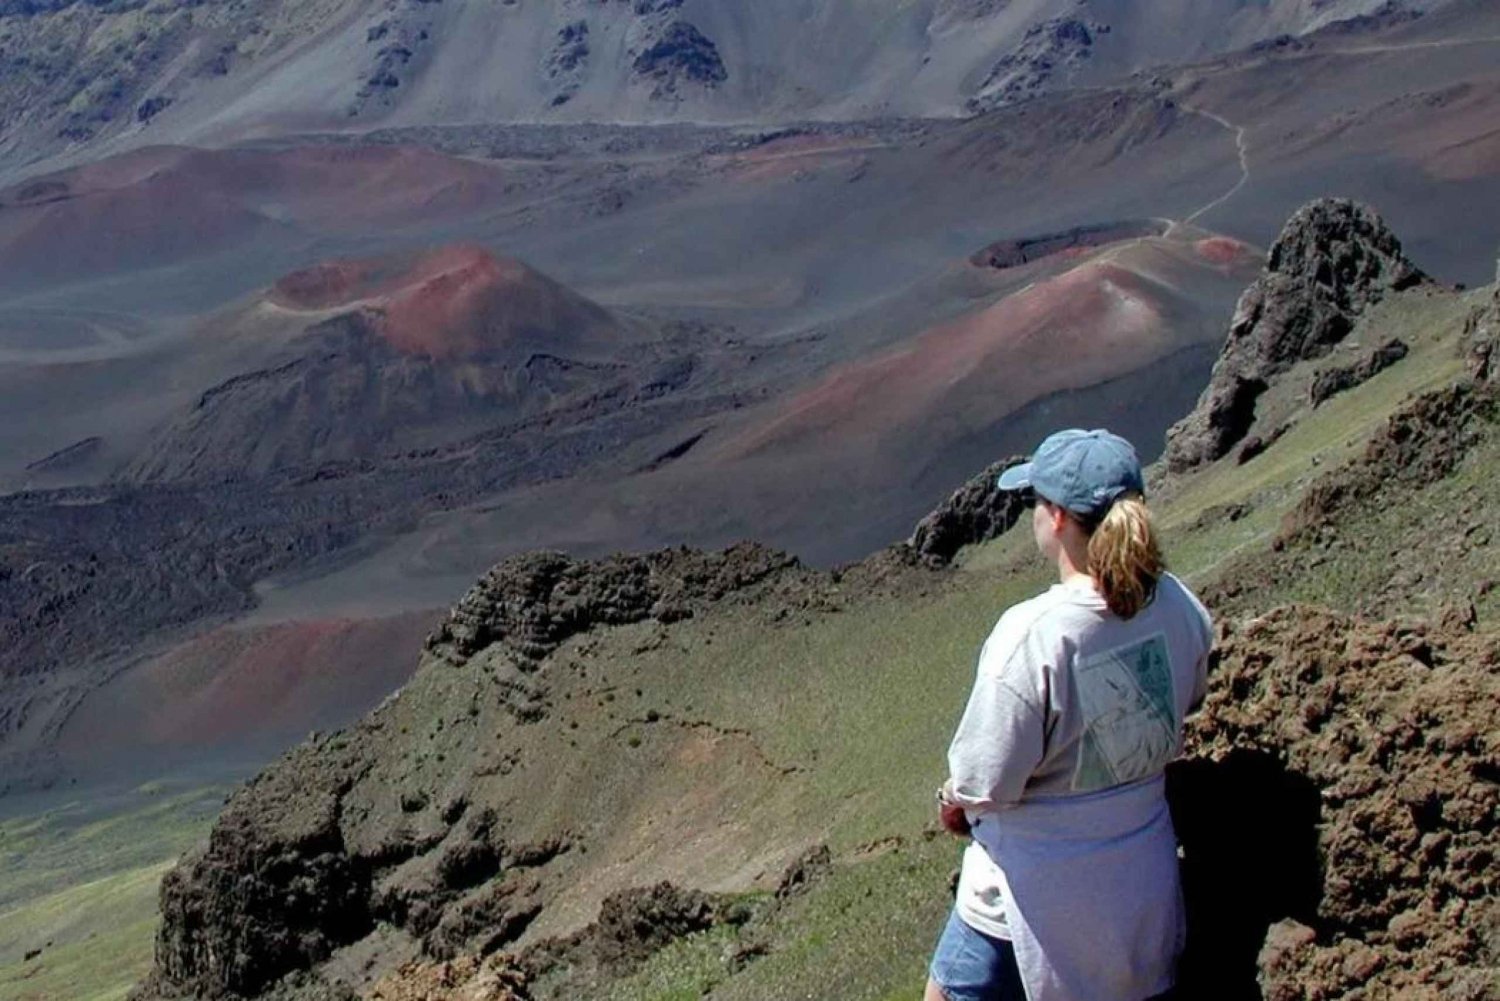 Maui: caminhada guiada pela cratera Haleakala com almoço